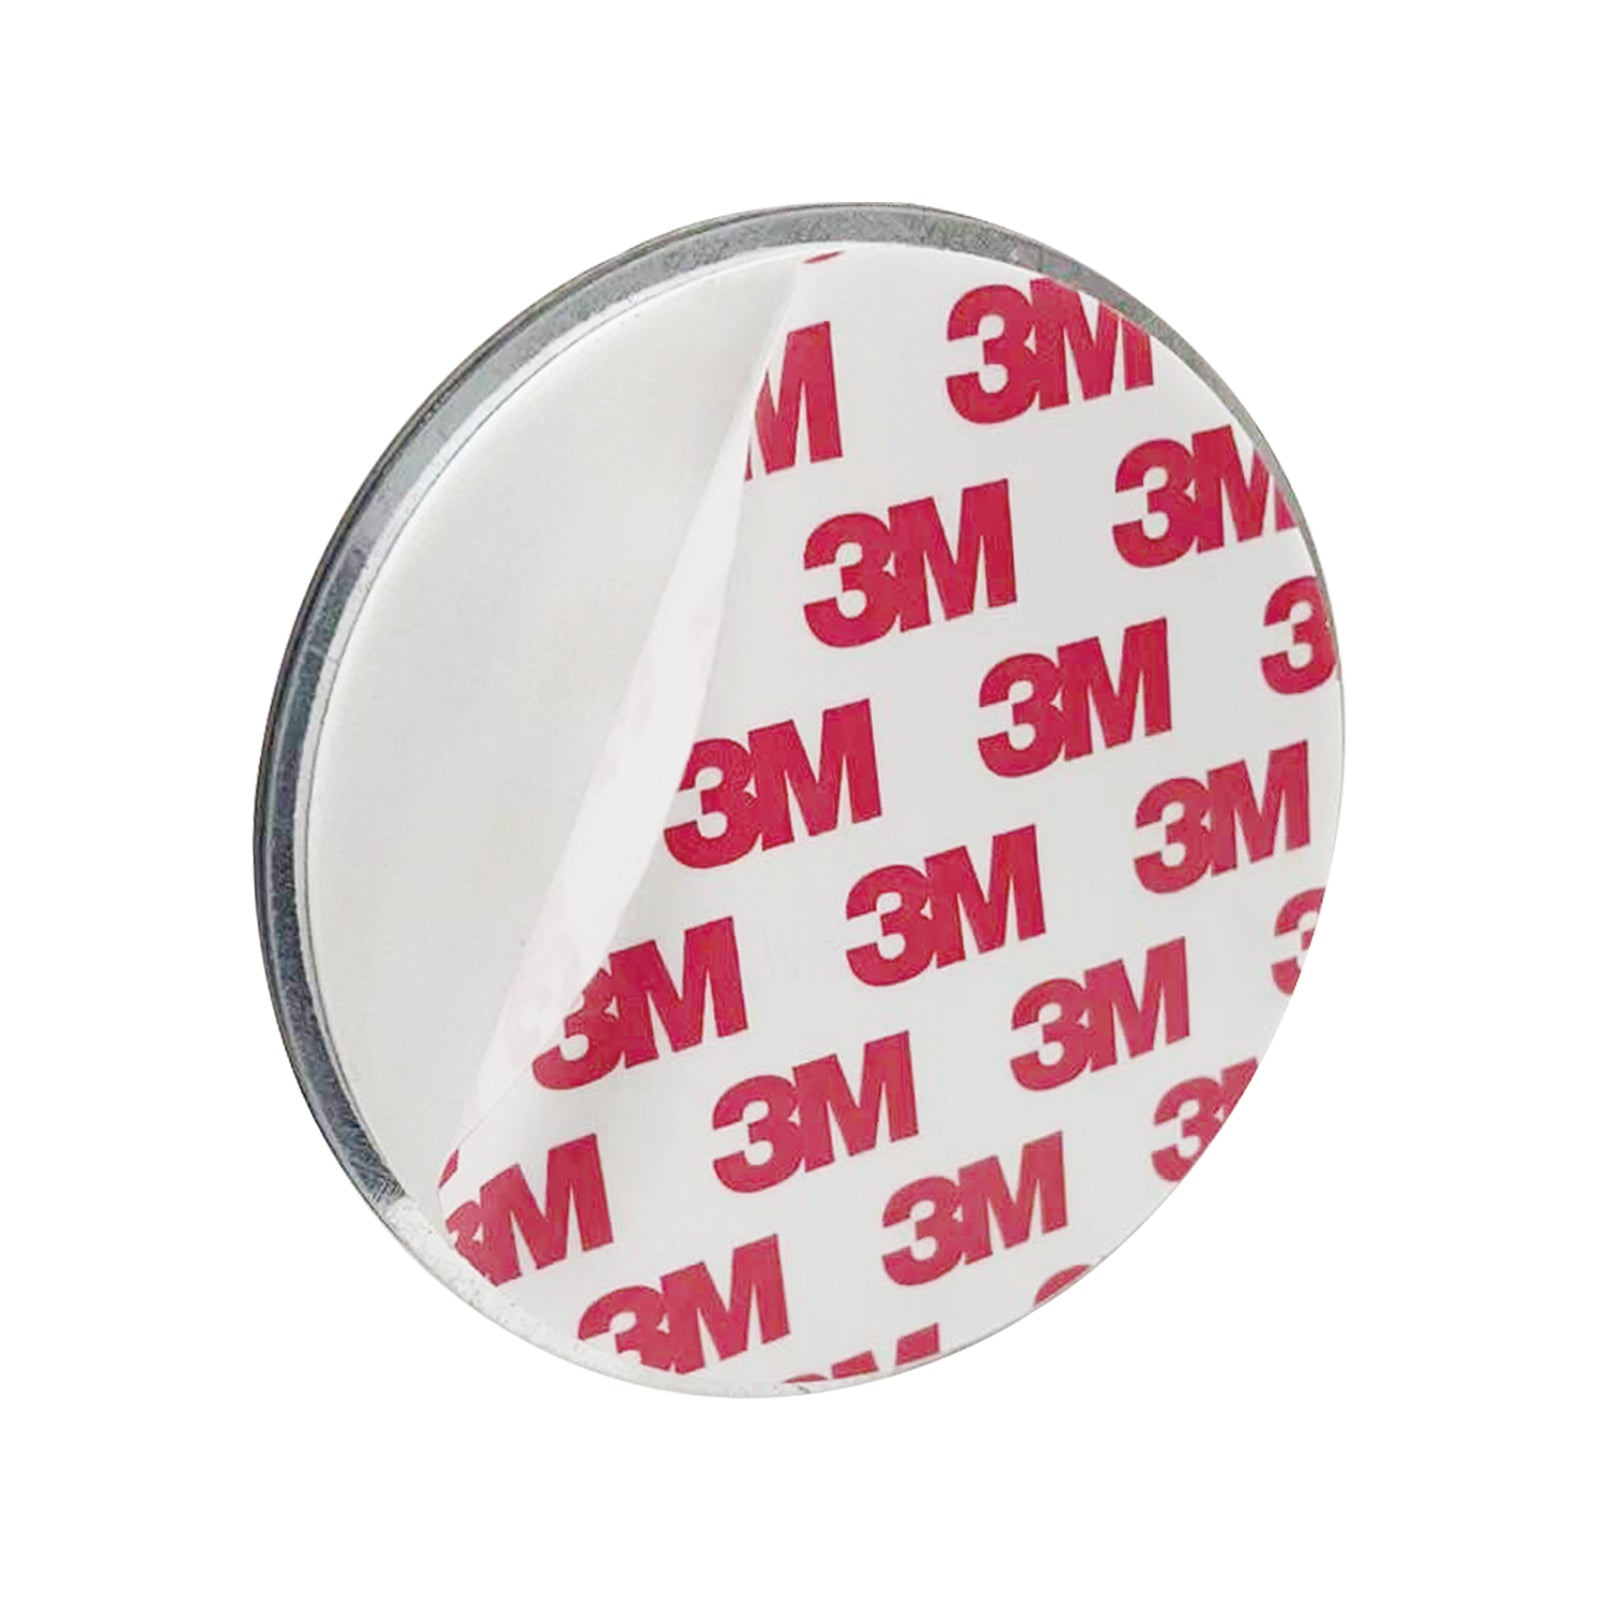 DVM-SB90M: rilevatore di fumo ottico, batteria sostituibile, montaggio magnetico